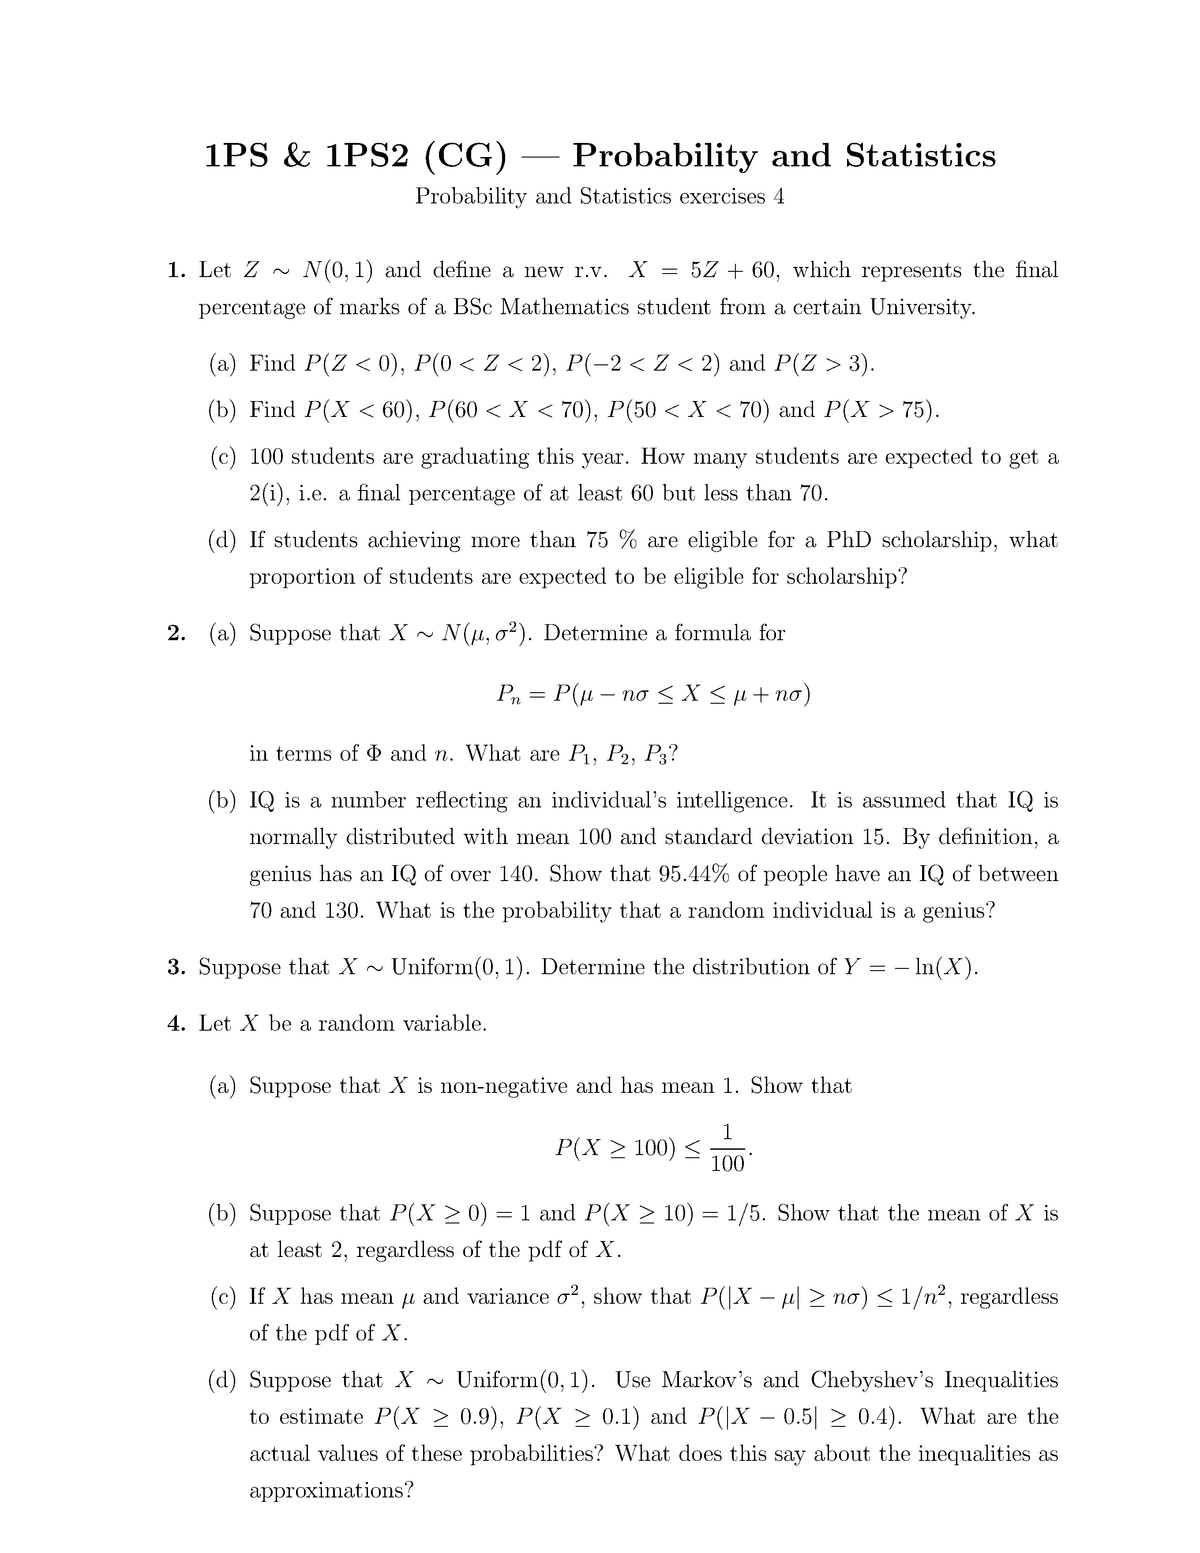 1ps Qu4 Stats Problem Sheet 4 Studocu